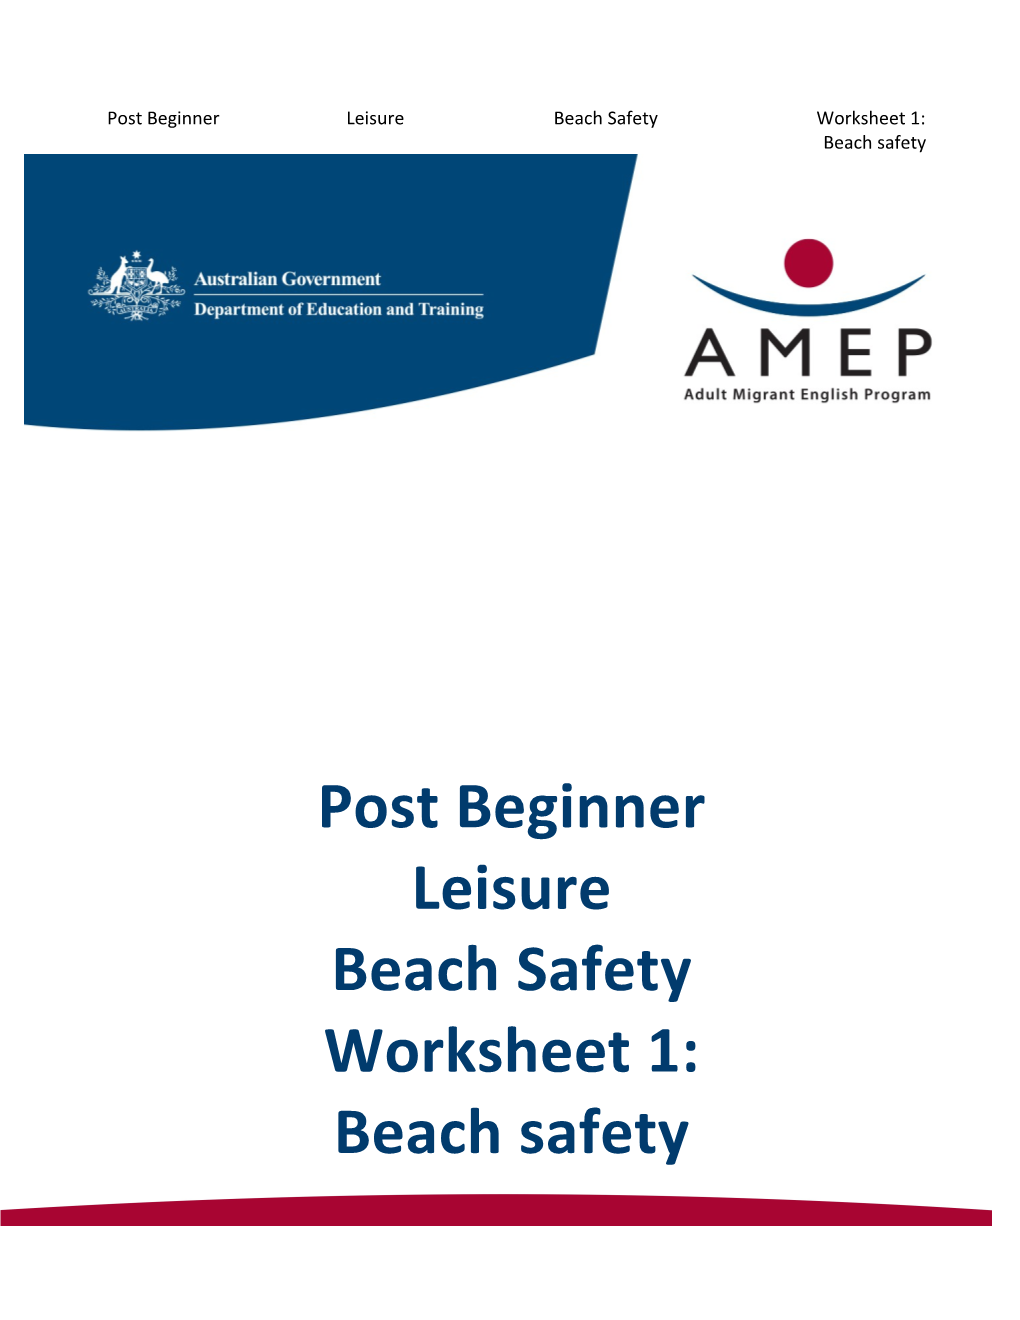 Post Beginner Leisure Beach Safety Worksheet 1: Beach Safety